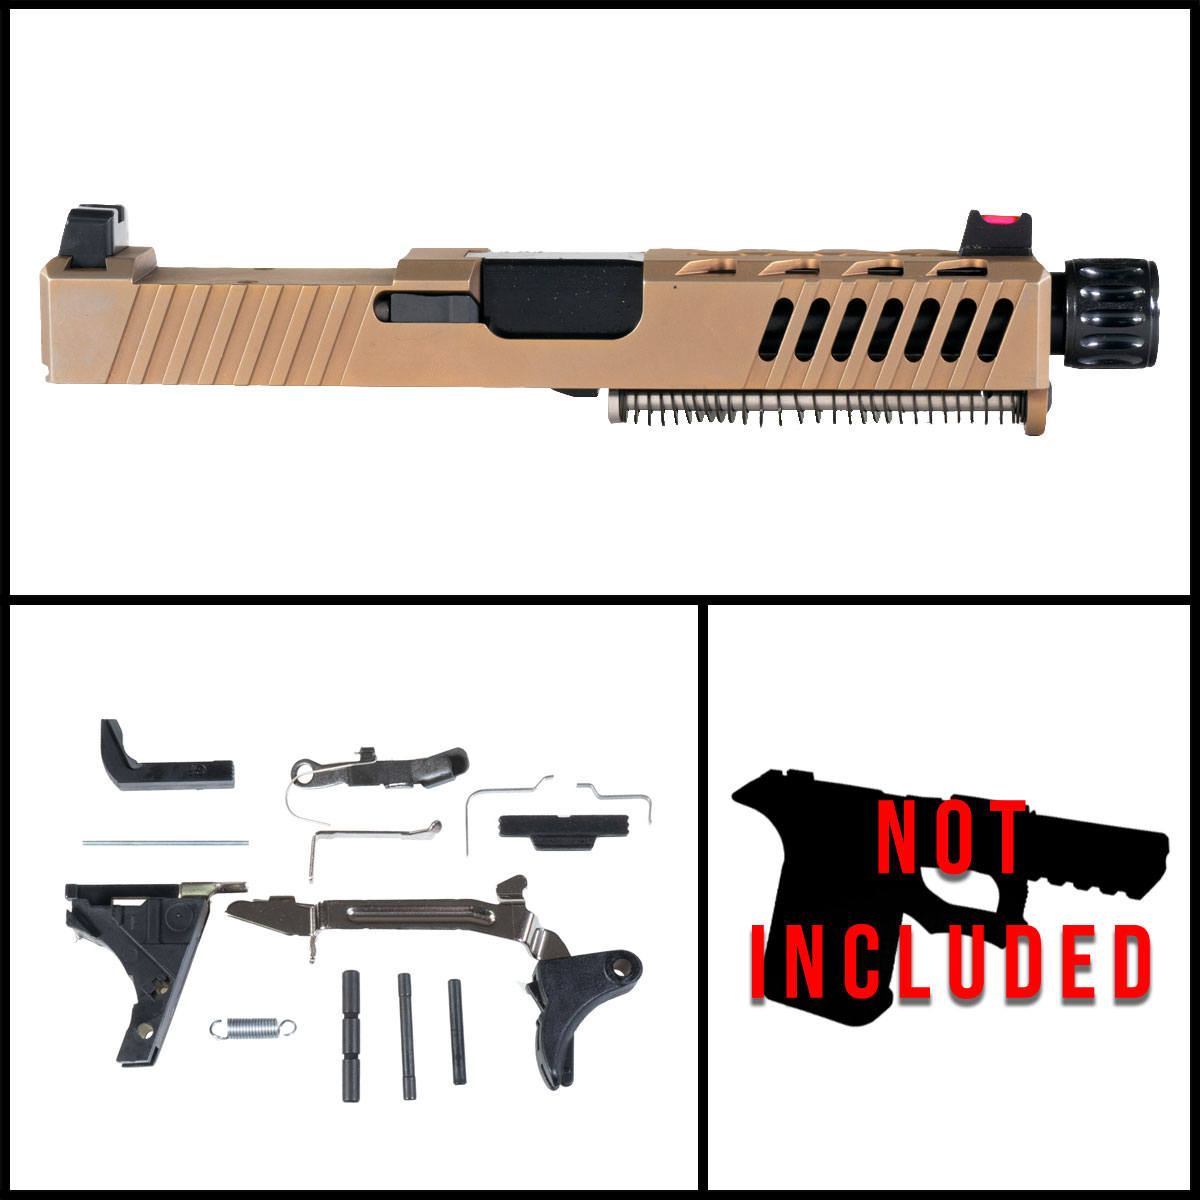 OTD 'RUST' 9mm Full Pistol Build Kit (Everything Minus Frame) - Glock 19 Compatible